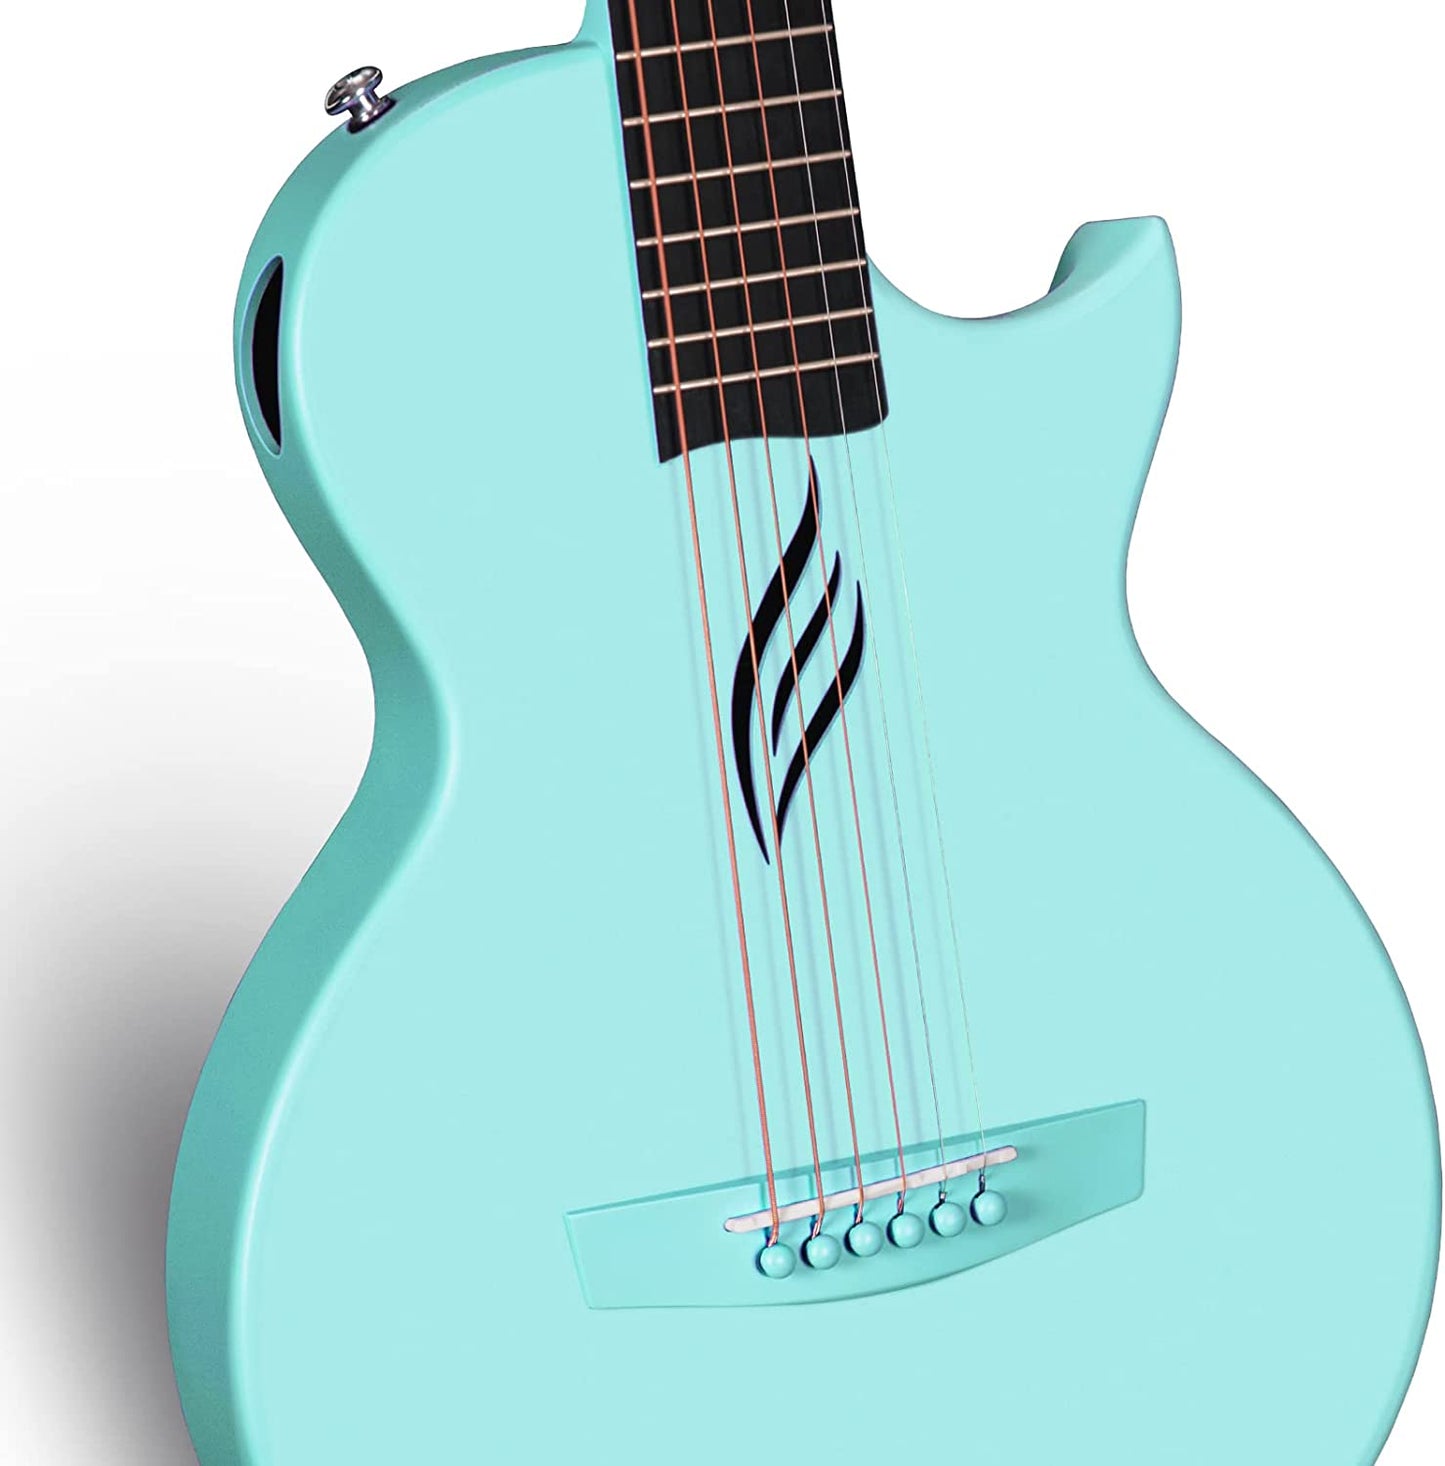 Enya Nova Go - Guitarra acústica de fibra de carbono, tamaño 1/2, para principiantes, adultos, viajes, kit de iniciación, paquete de regalo colorido